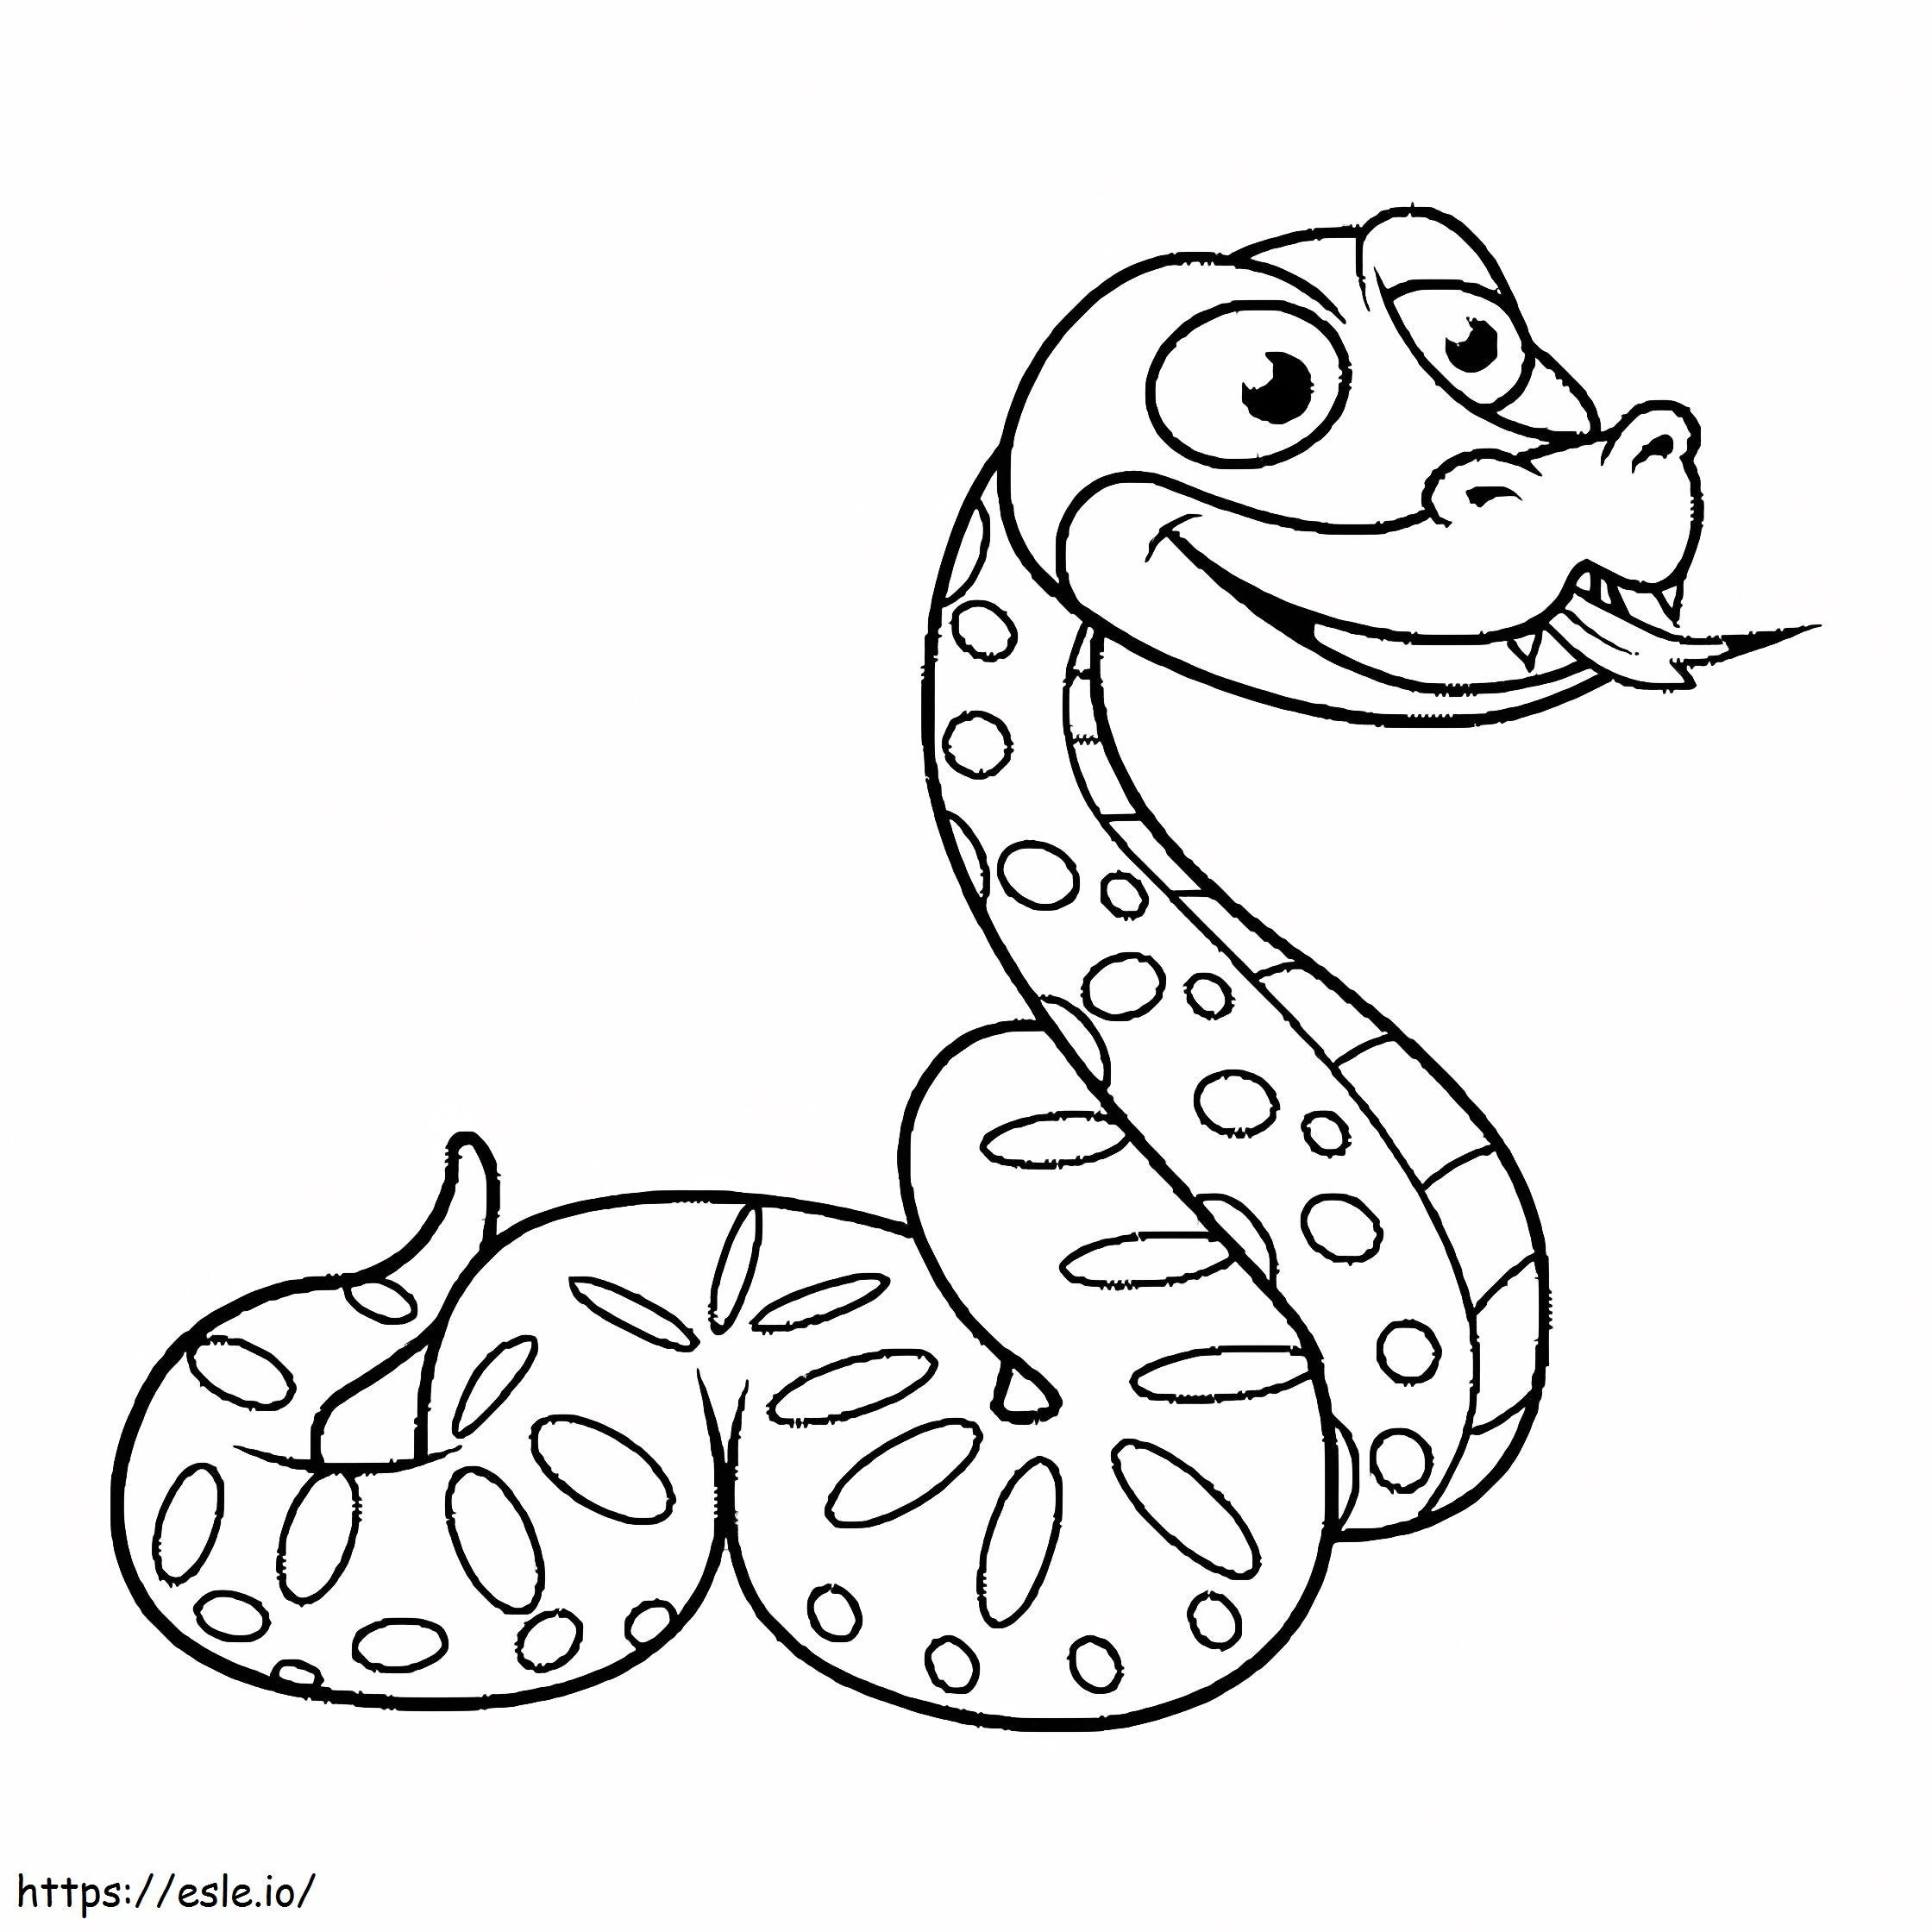 Python distractiv de colorat